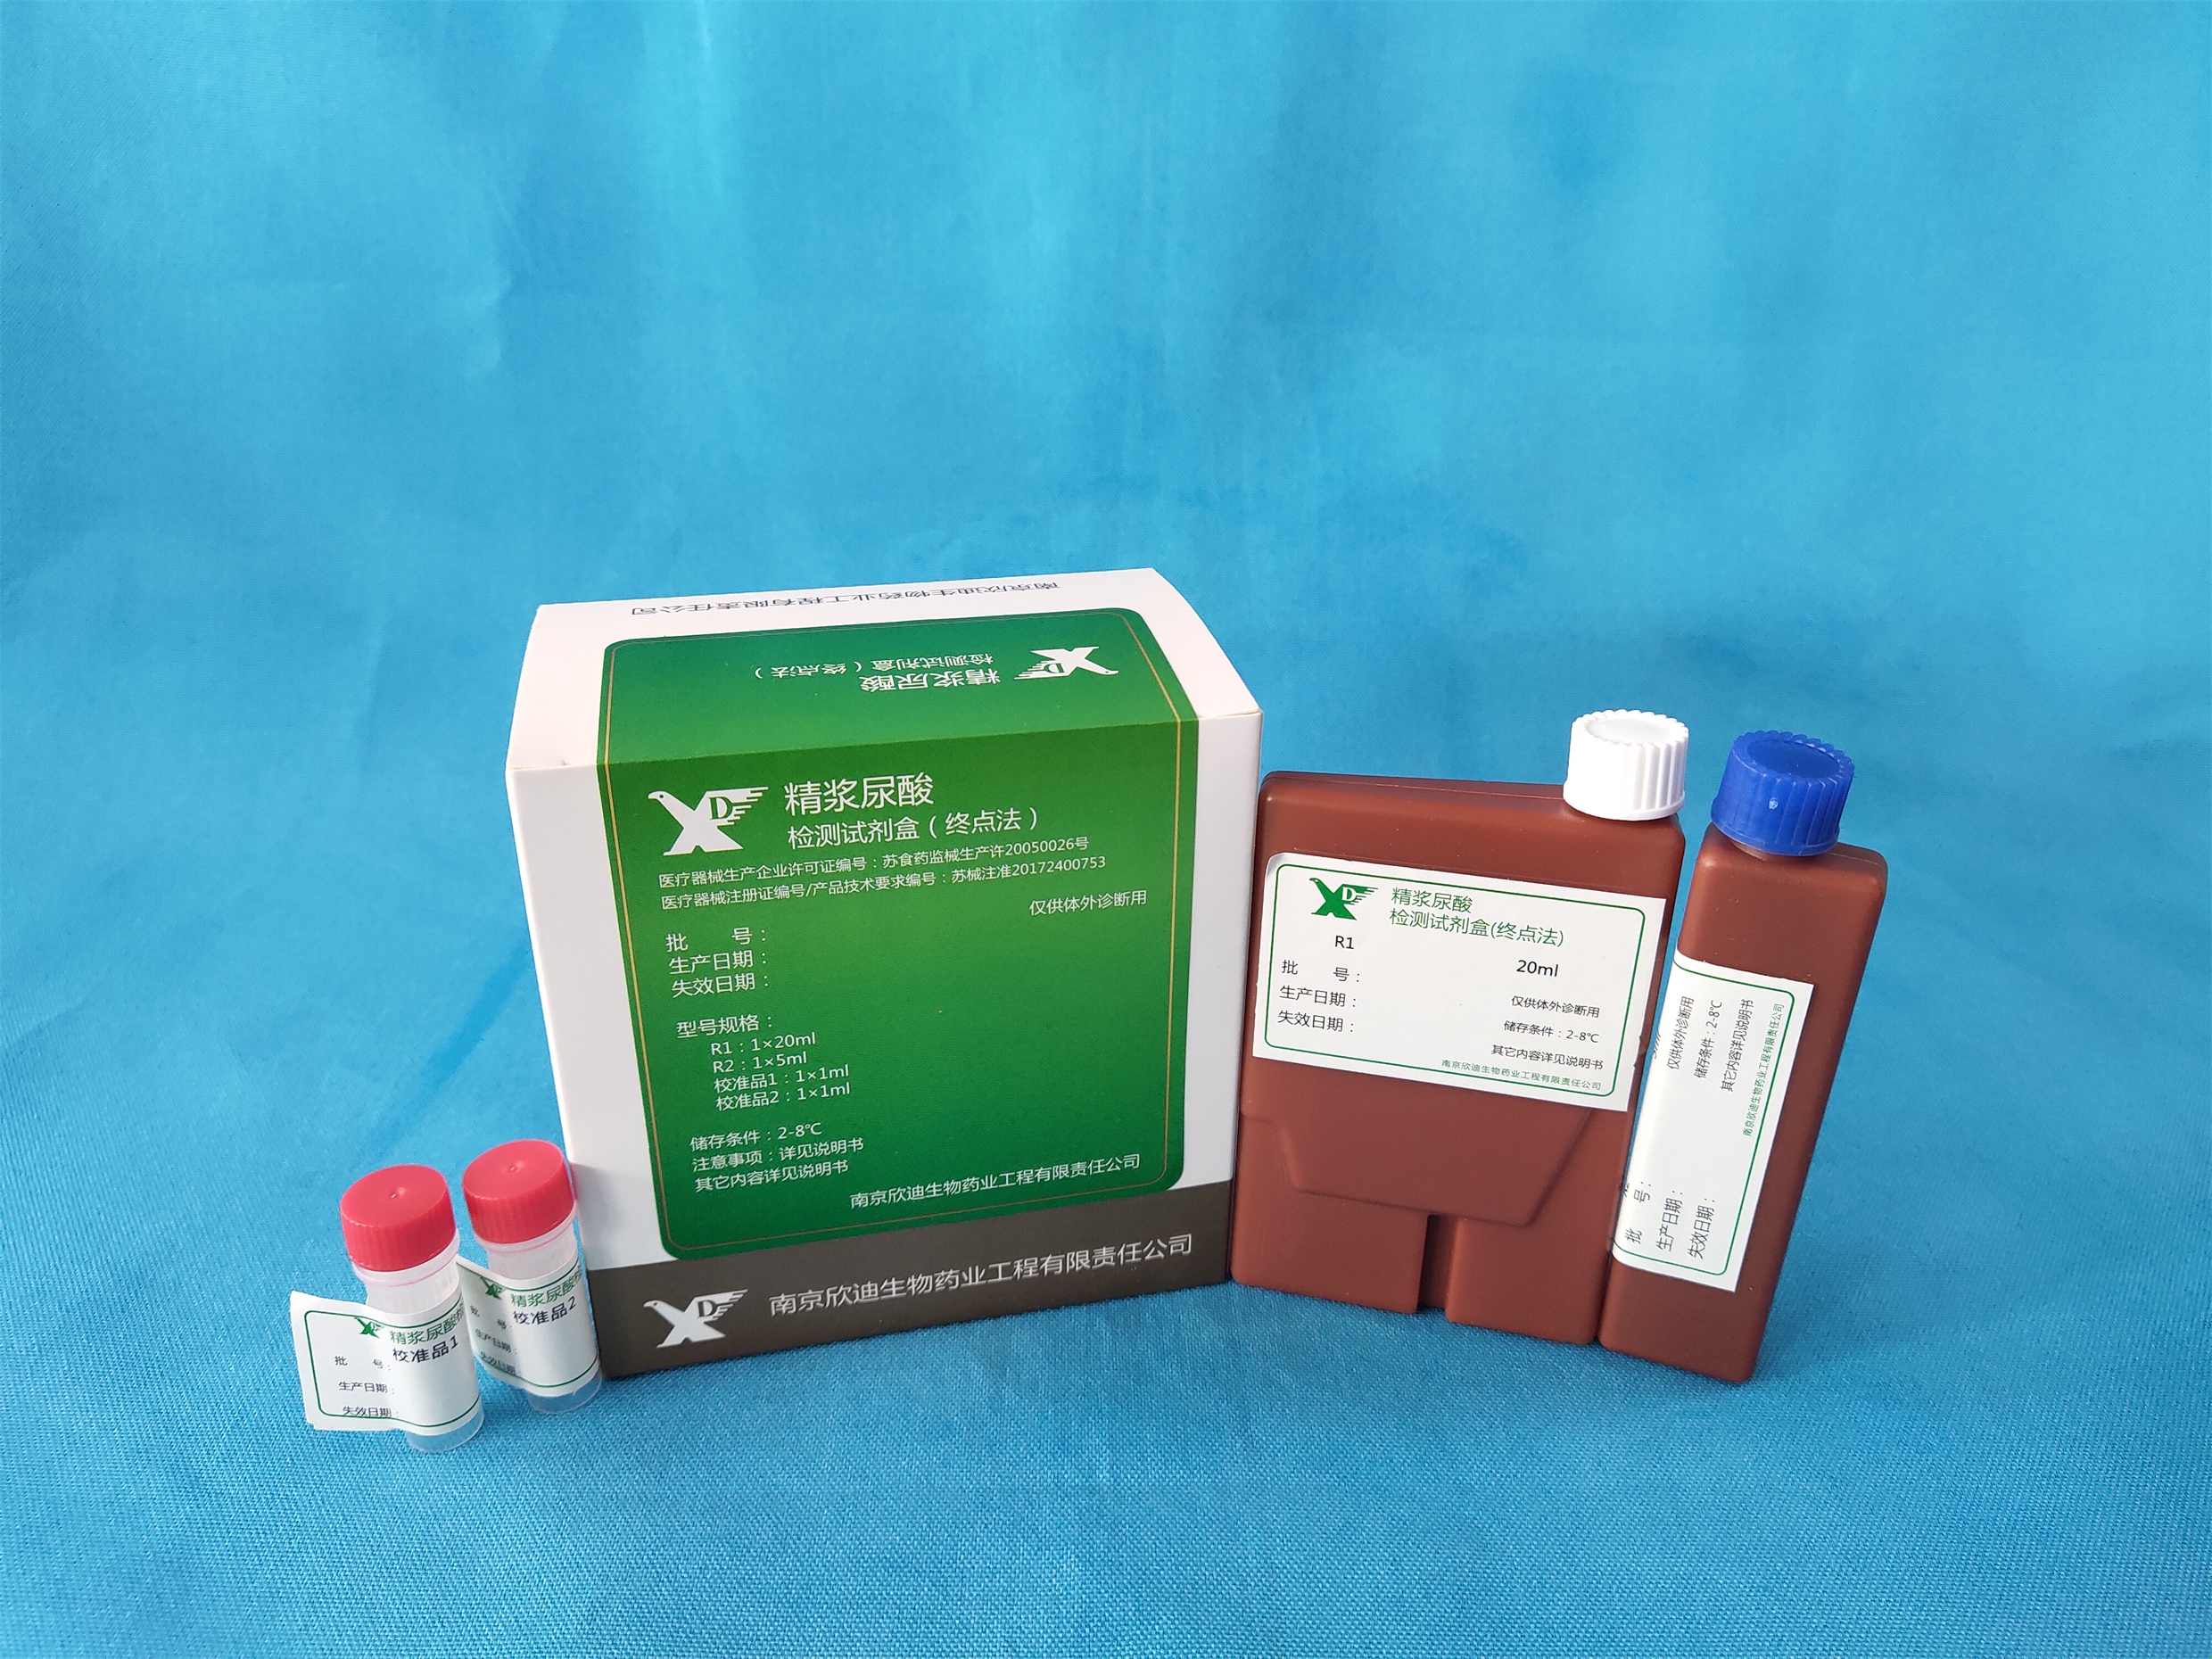 【欣迪】精浆尿酸检测试剂盒(终点法)